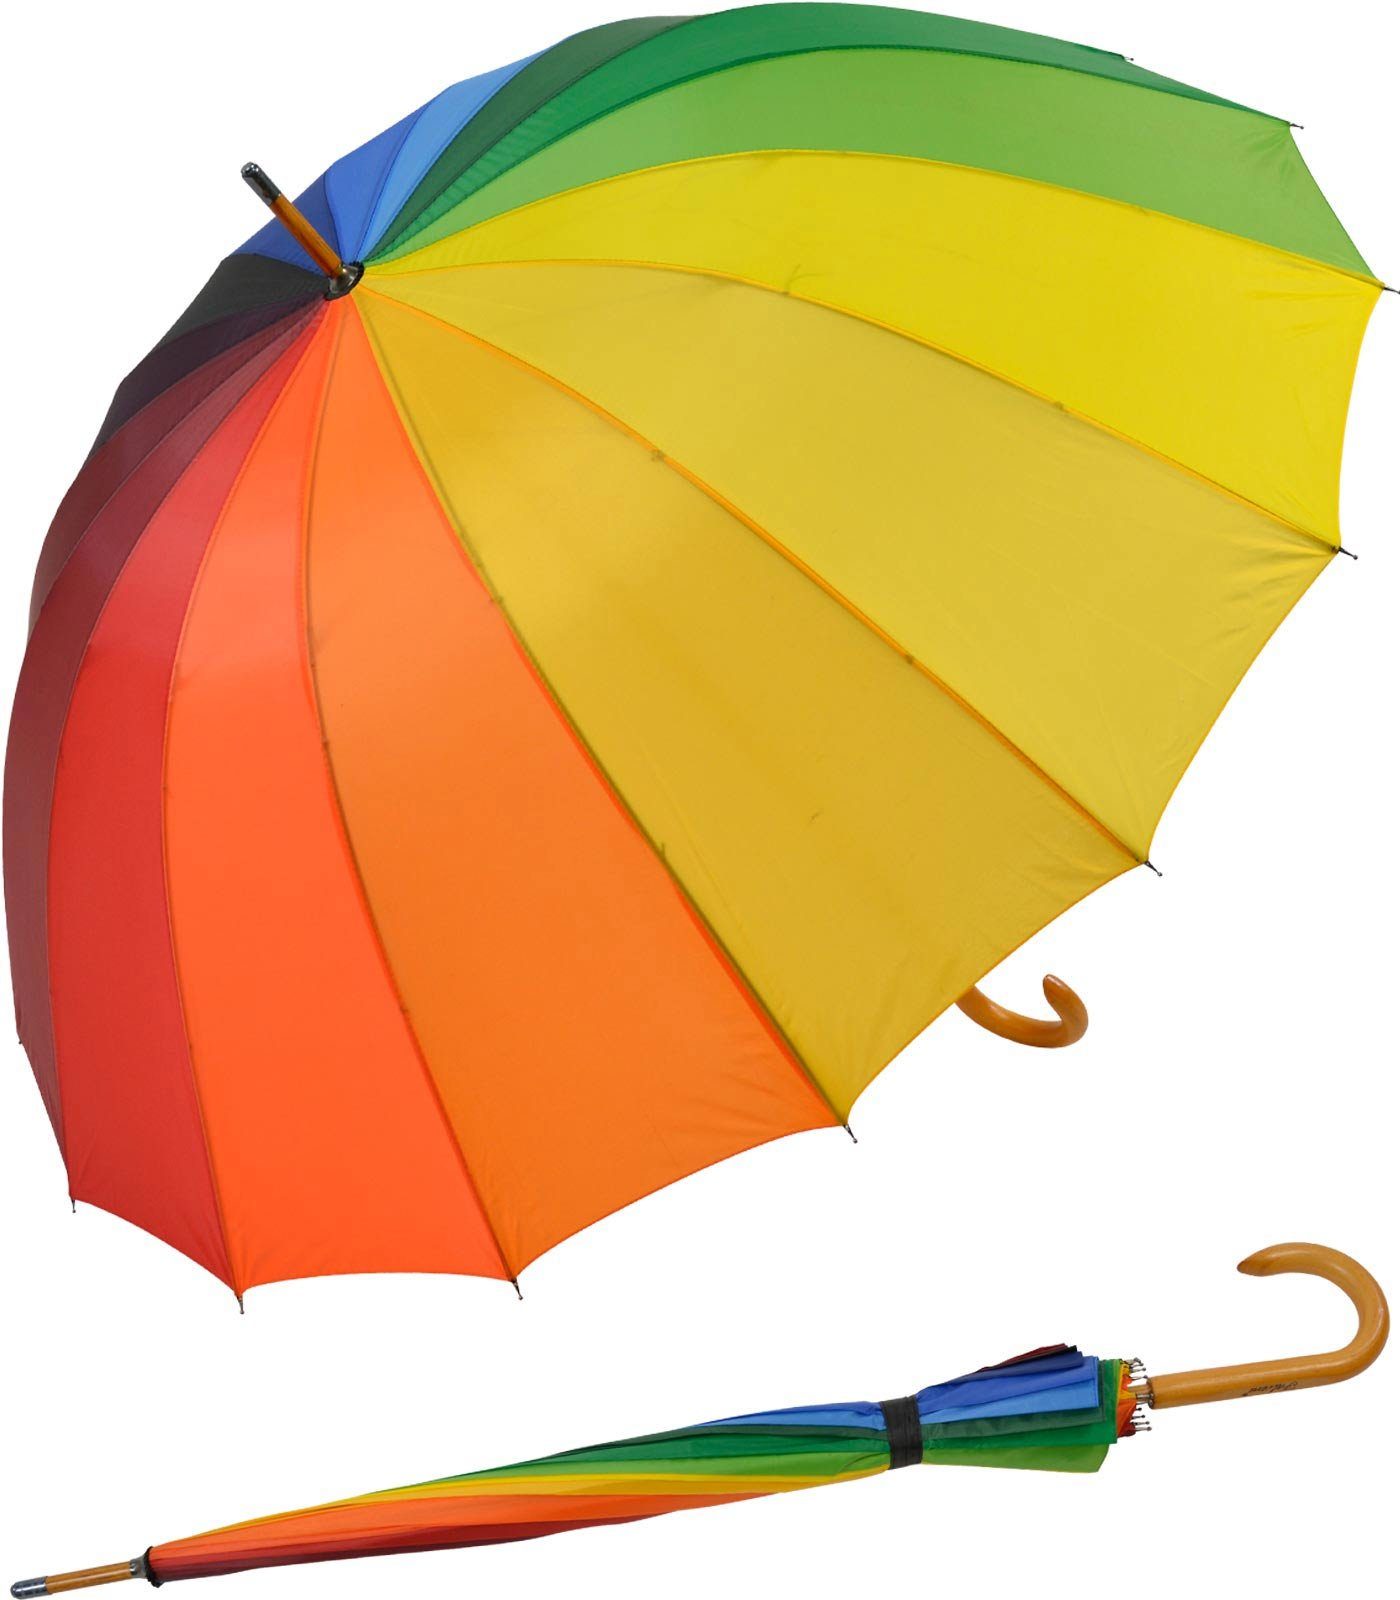 Impliva Langregenschirm Falcone® Regenbogen Schirm Holzstock mit Holzgriff, sehr bunt und farbenfroh im Rainbow-Look